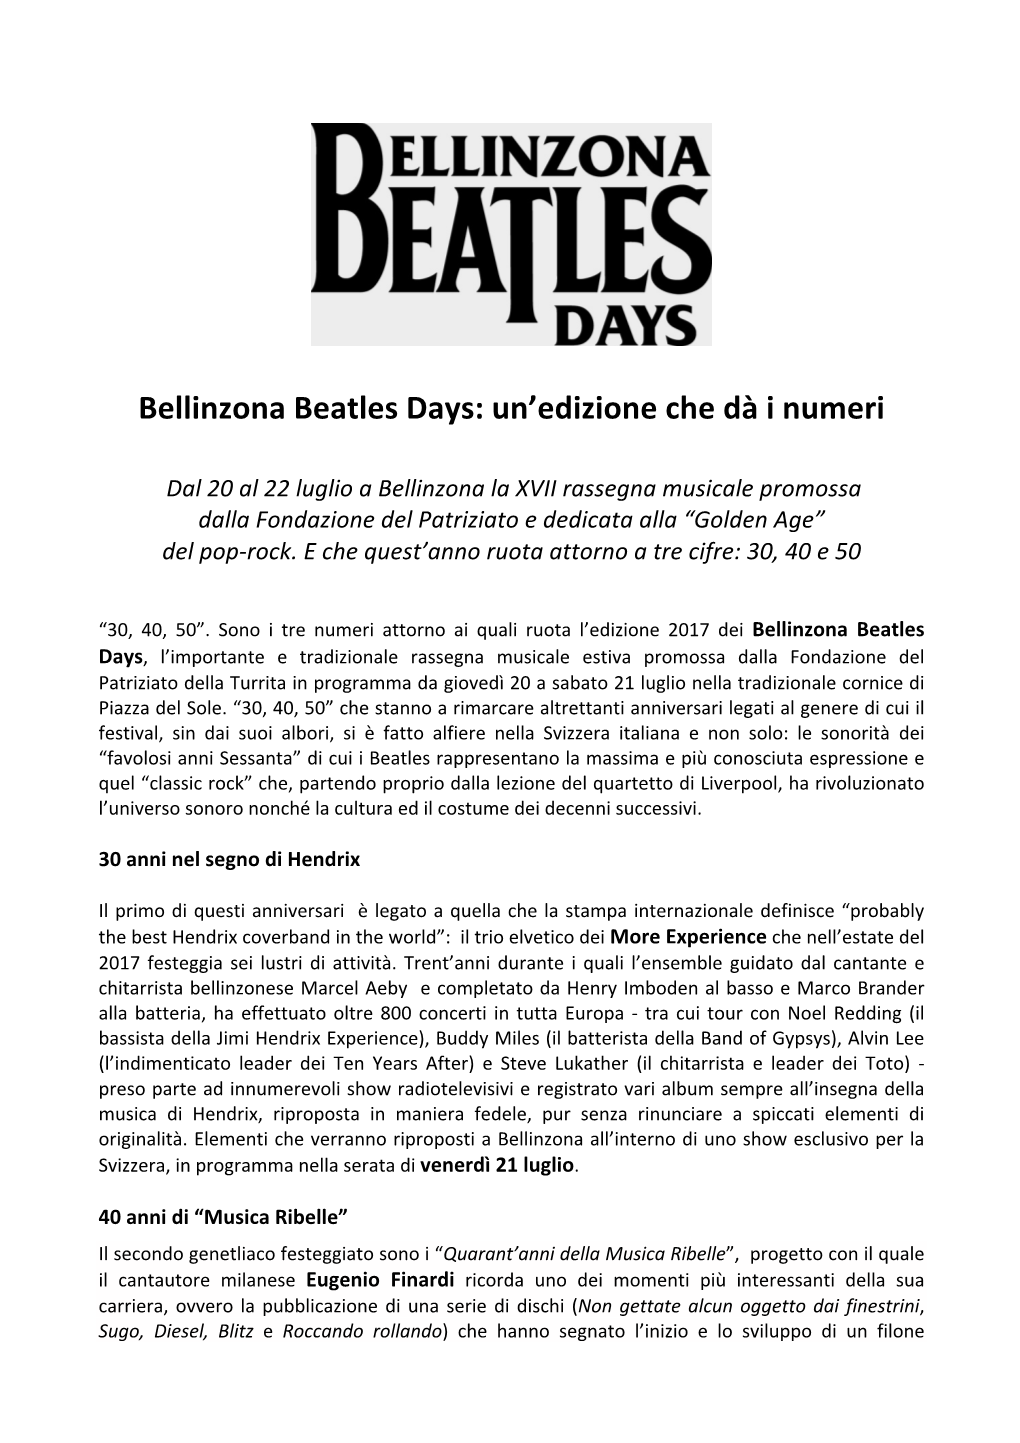 Bellinzona Beatles Days: Un'edizione Che Dà I Numeri